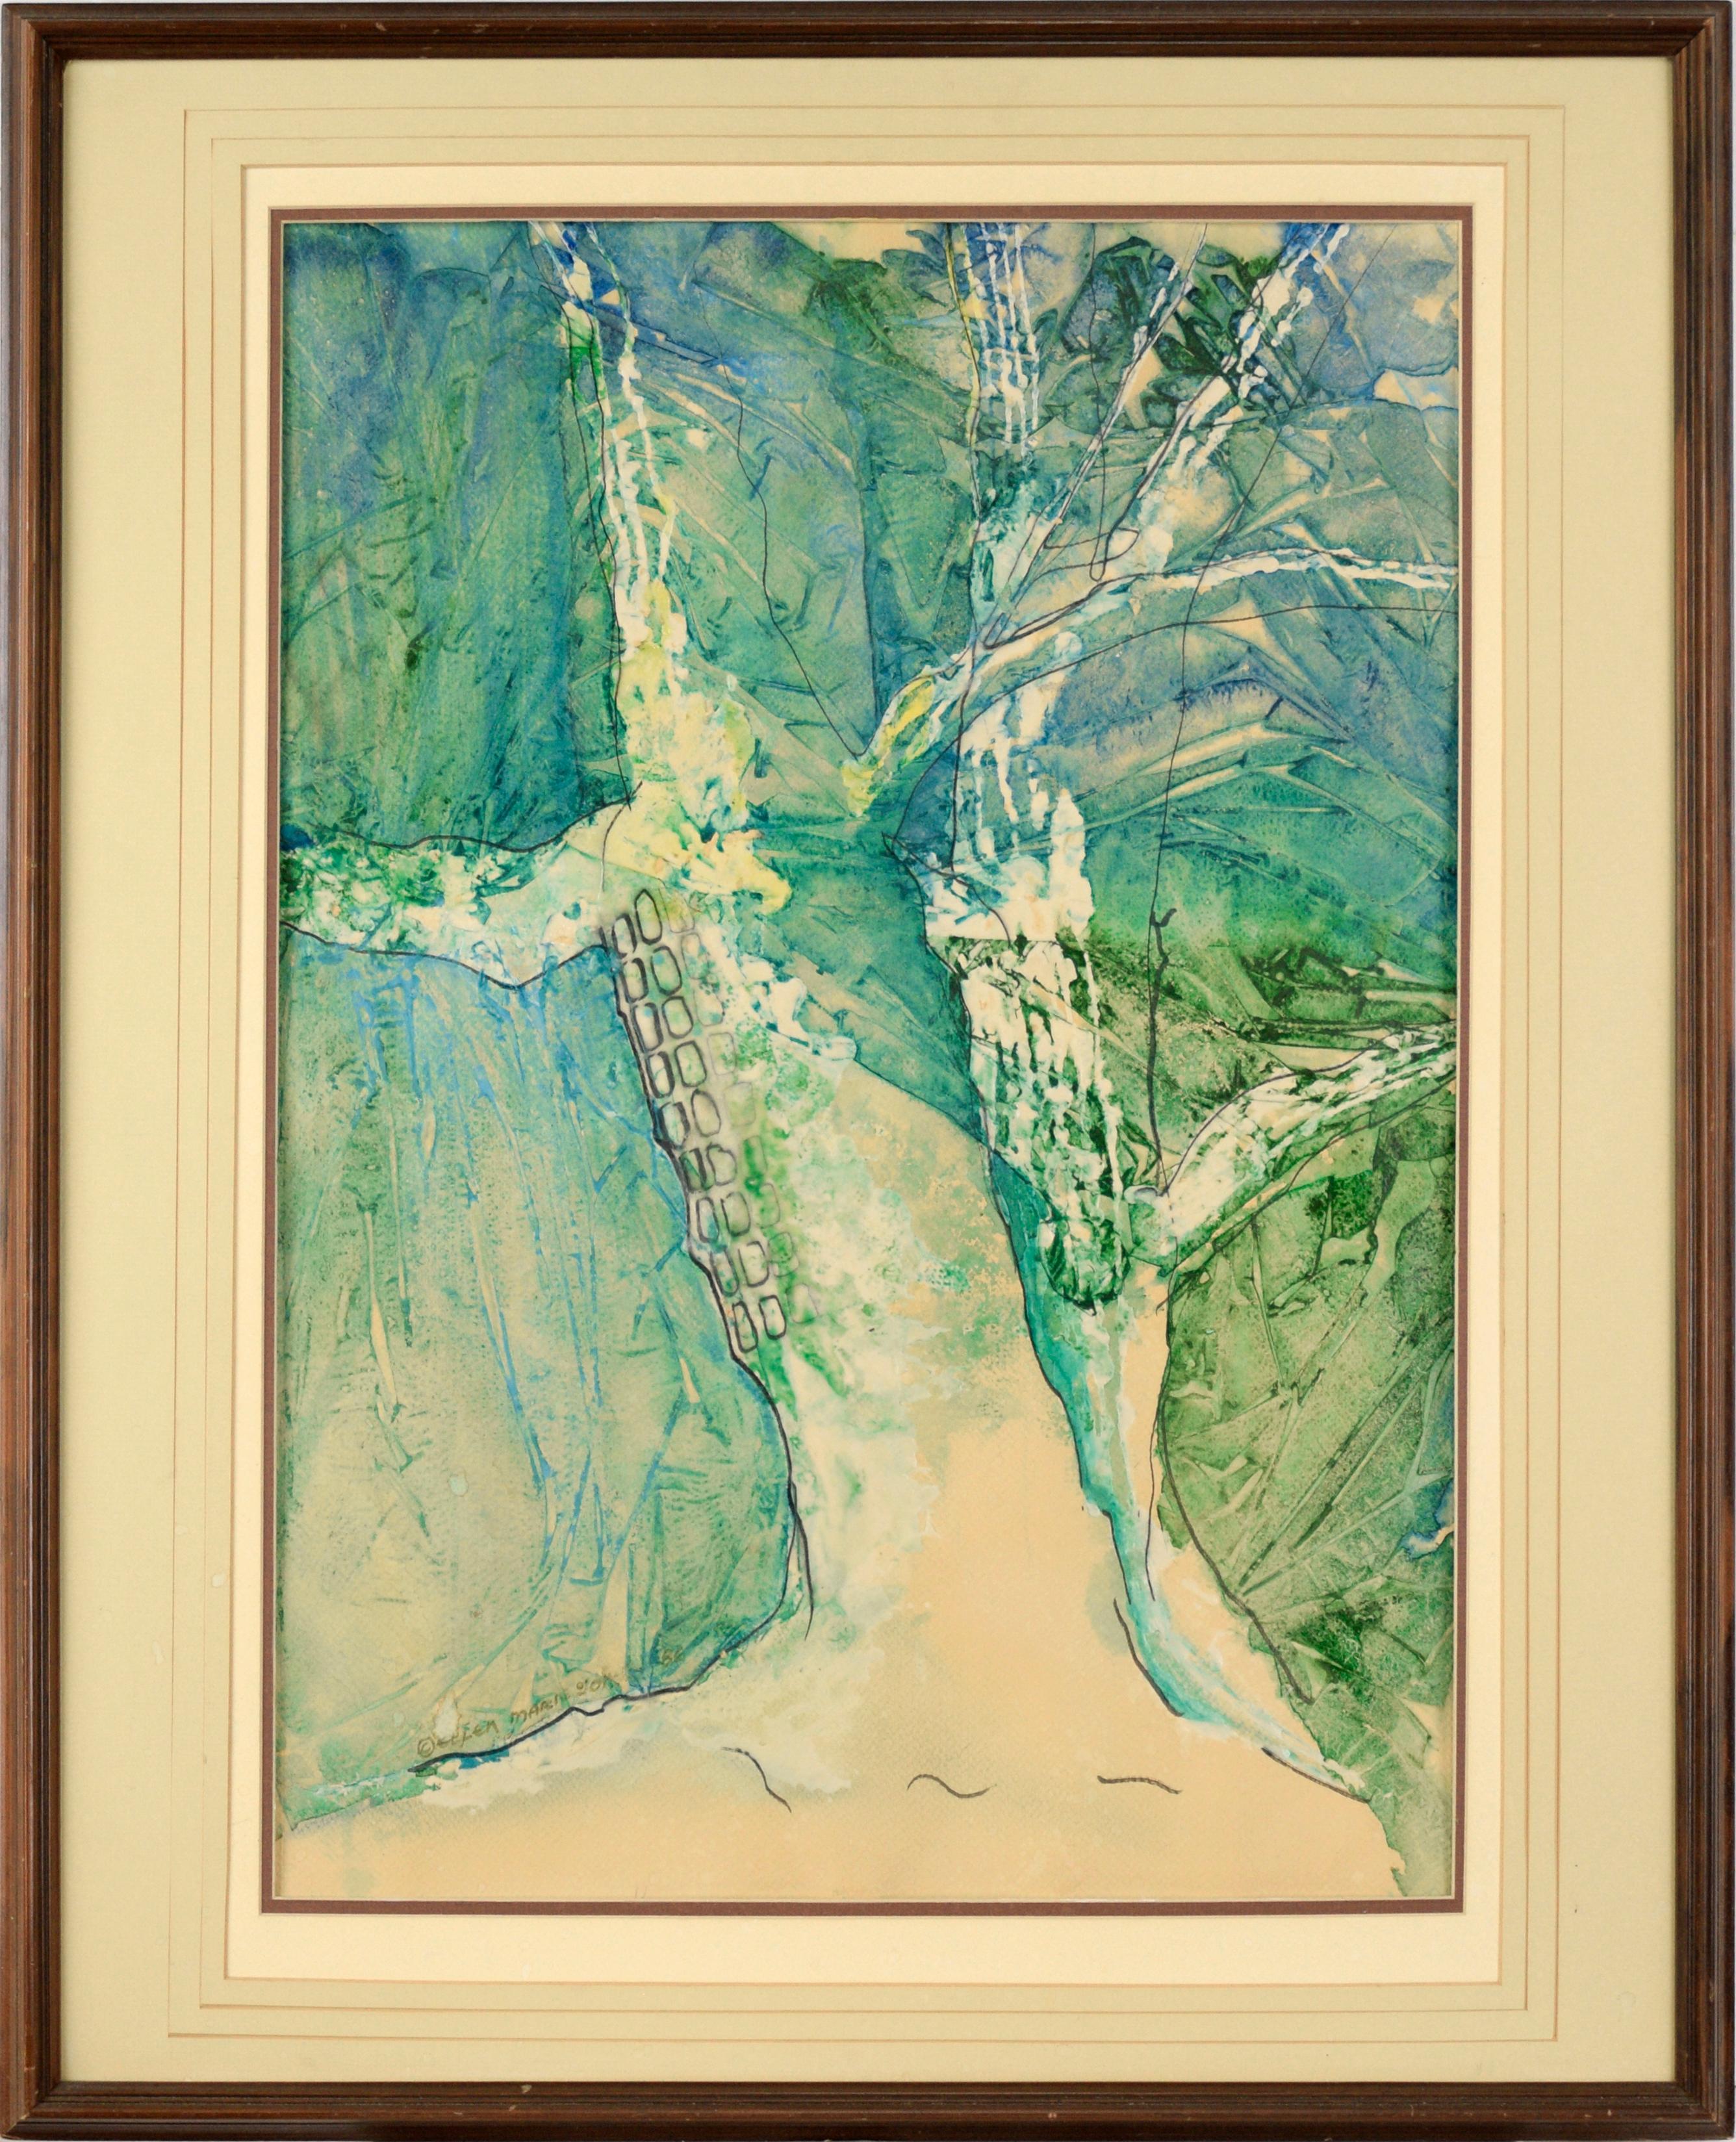 Landscape Painting Ellen Marie Jones - Composition expressionniste abstraite « Sycamores » en acrylique sur papier